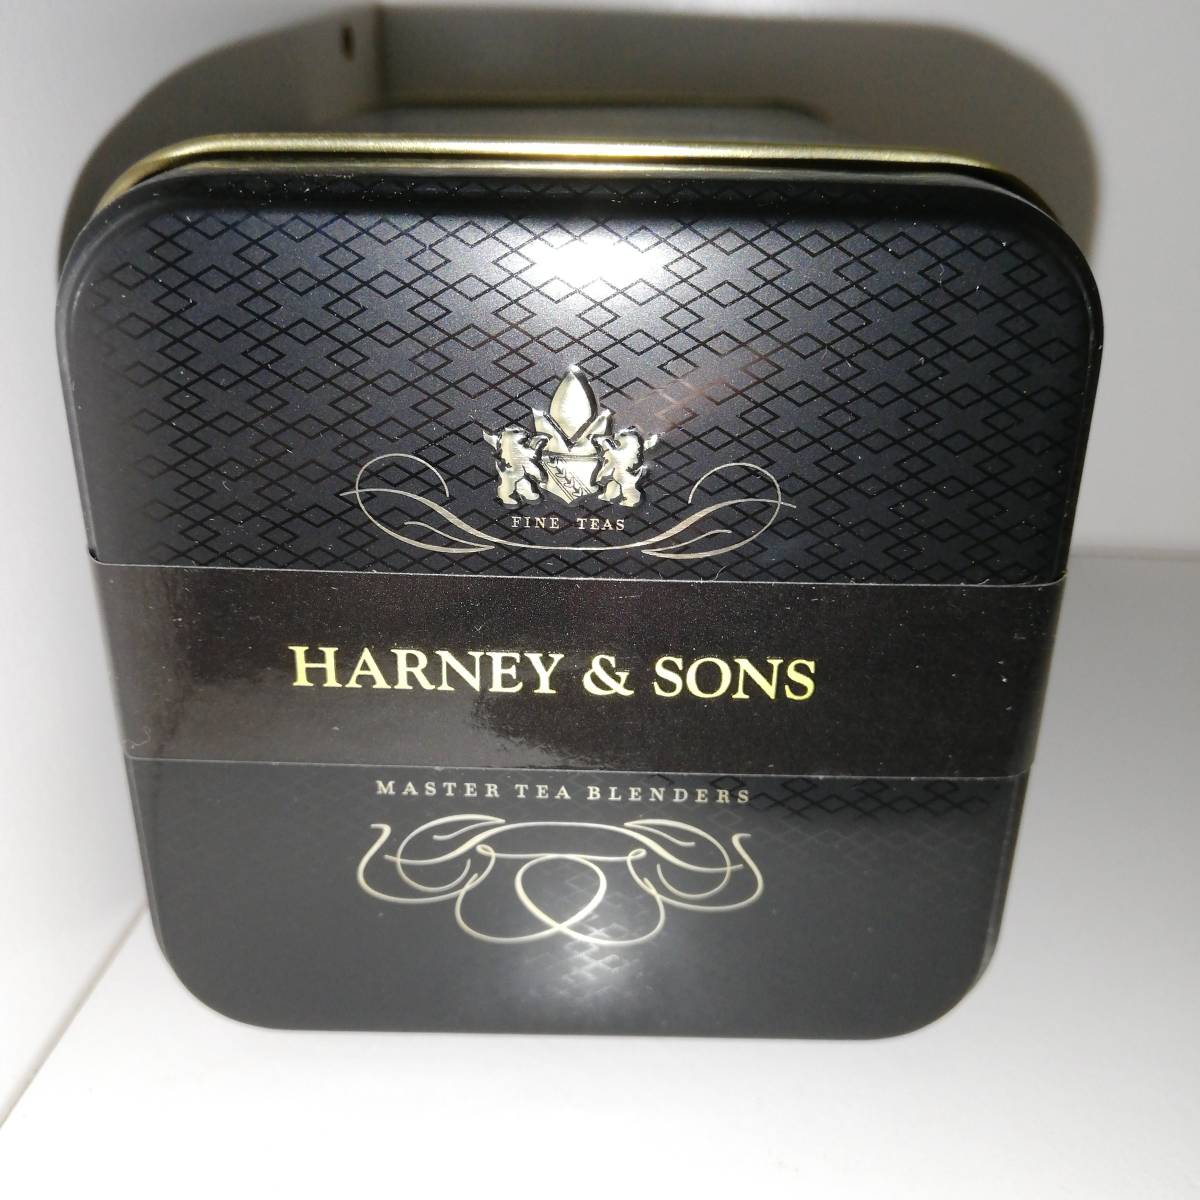 紅茶缶 チョコミント風味紅茶 112g Harney & Sons ハーニー&サンズ【新品・送料込】